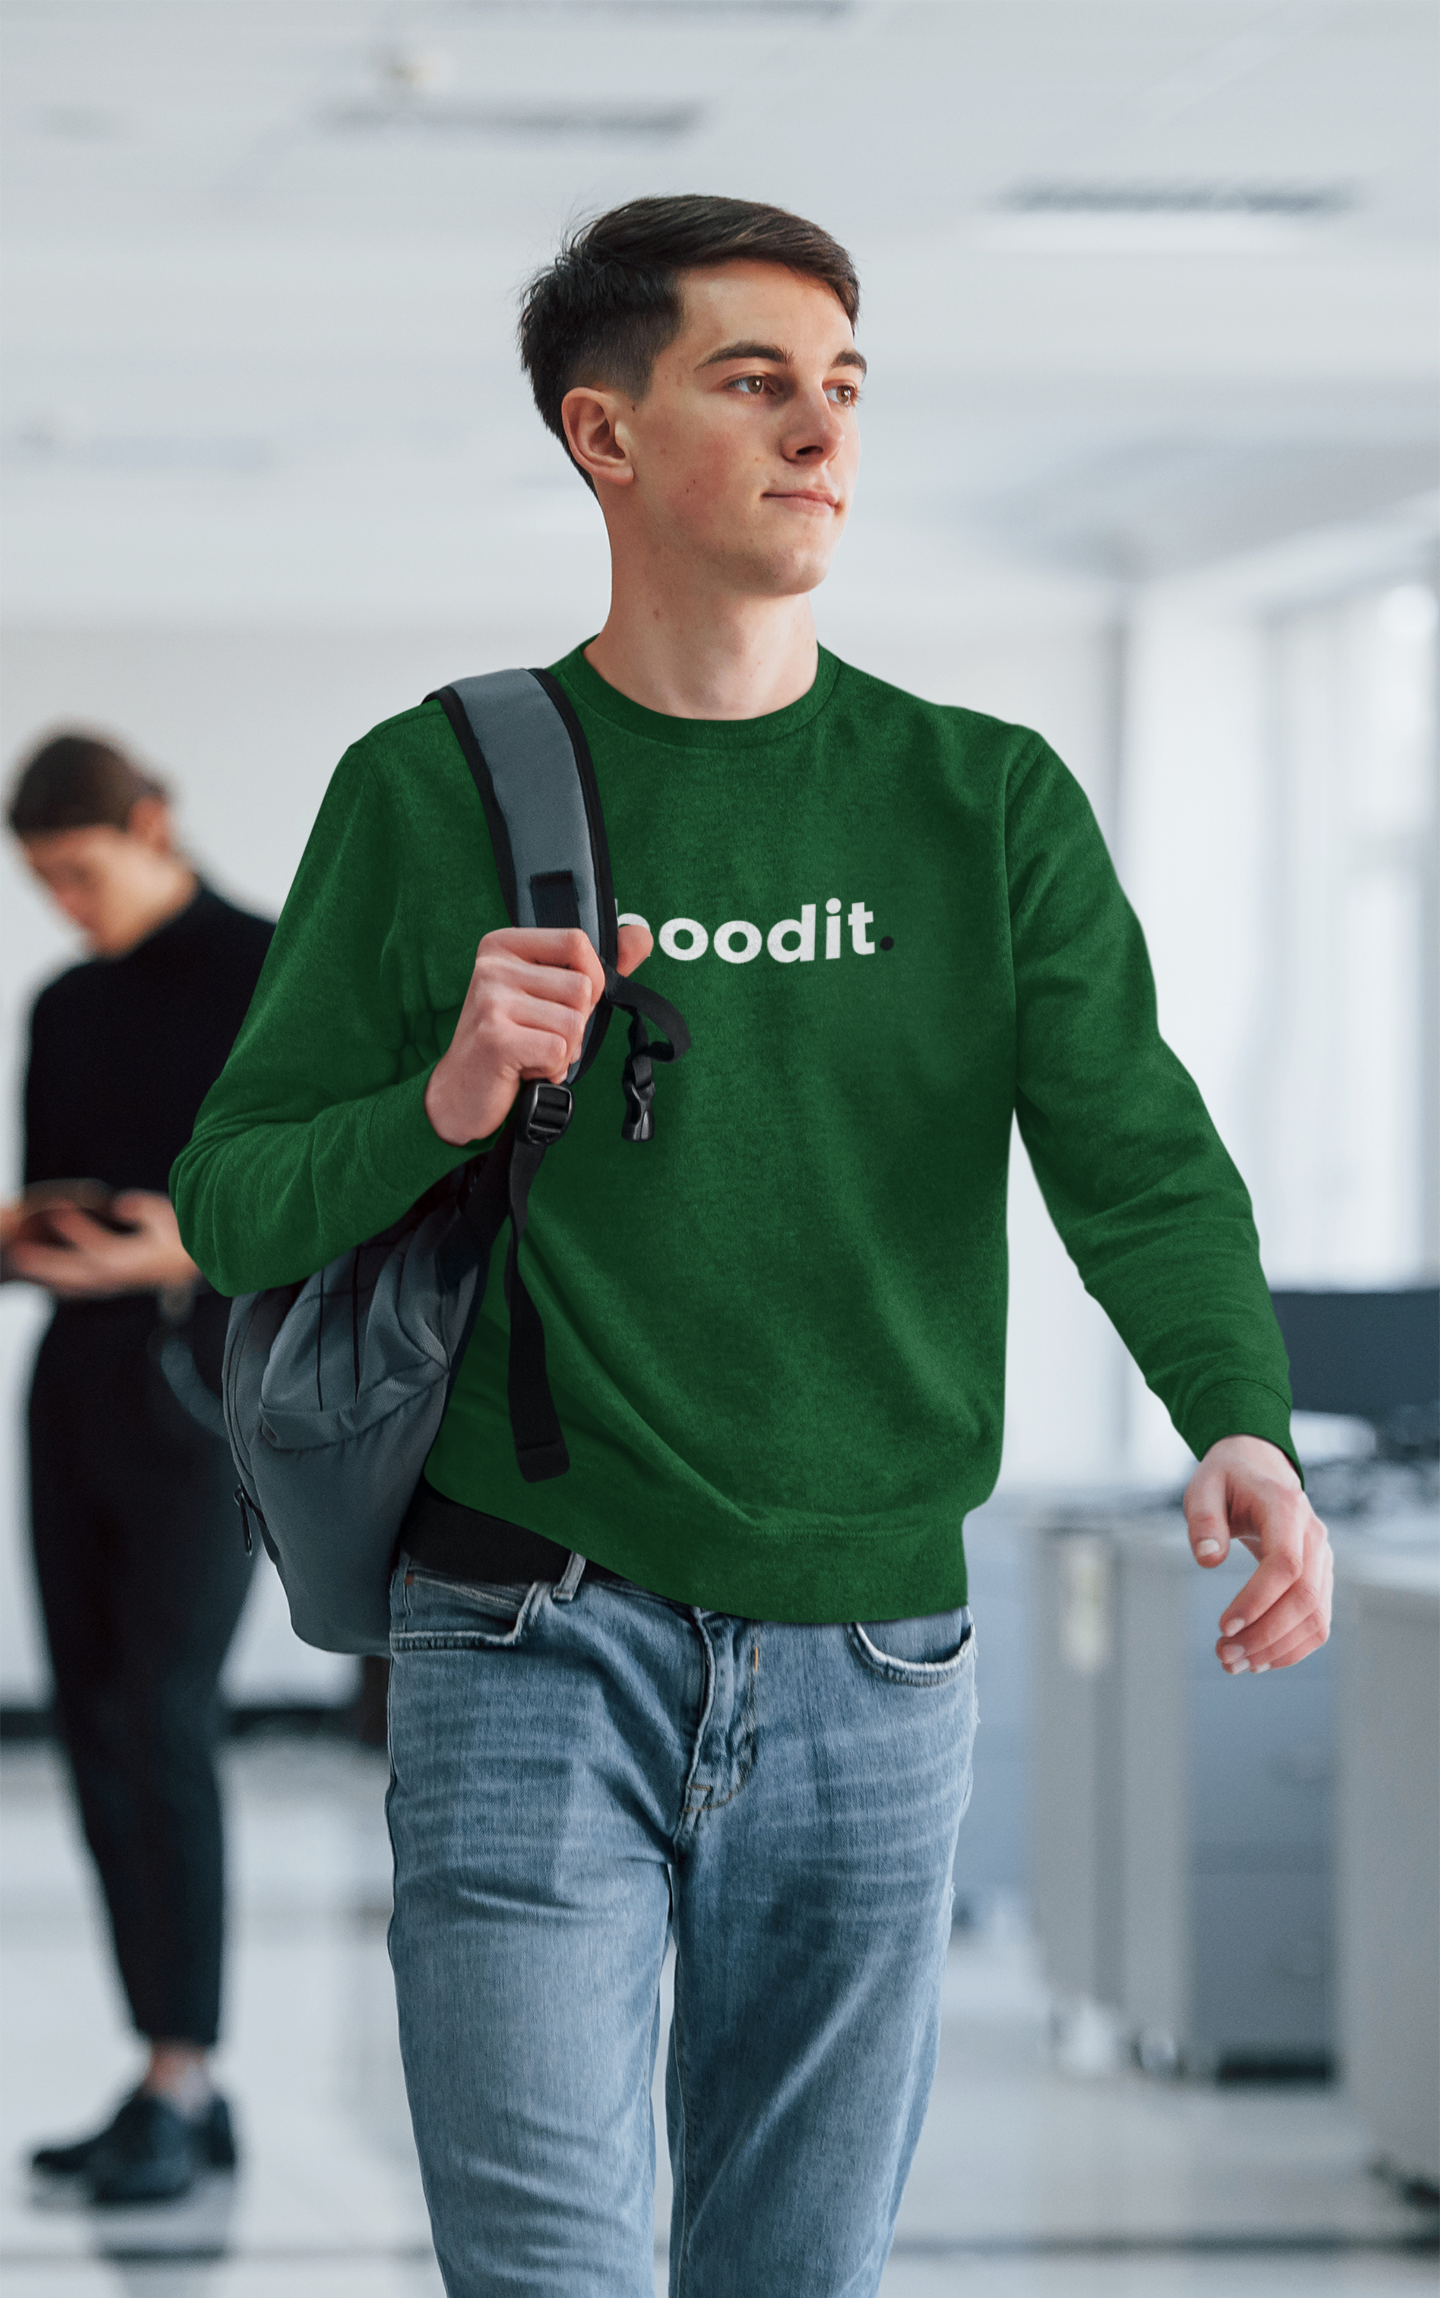 Hoodit - Organic Sweatshirt